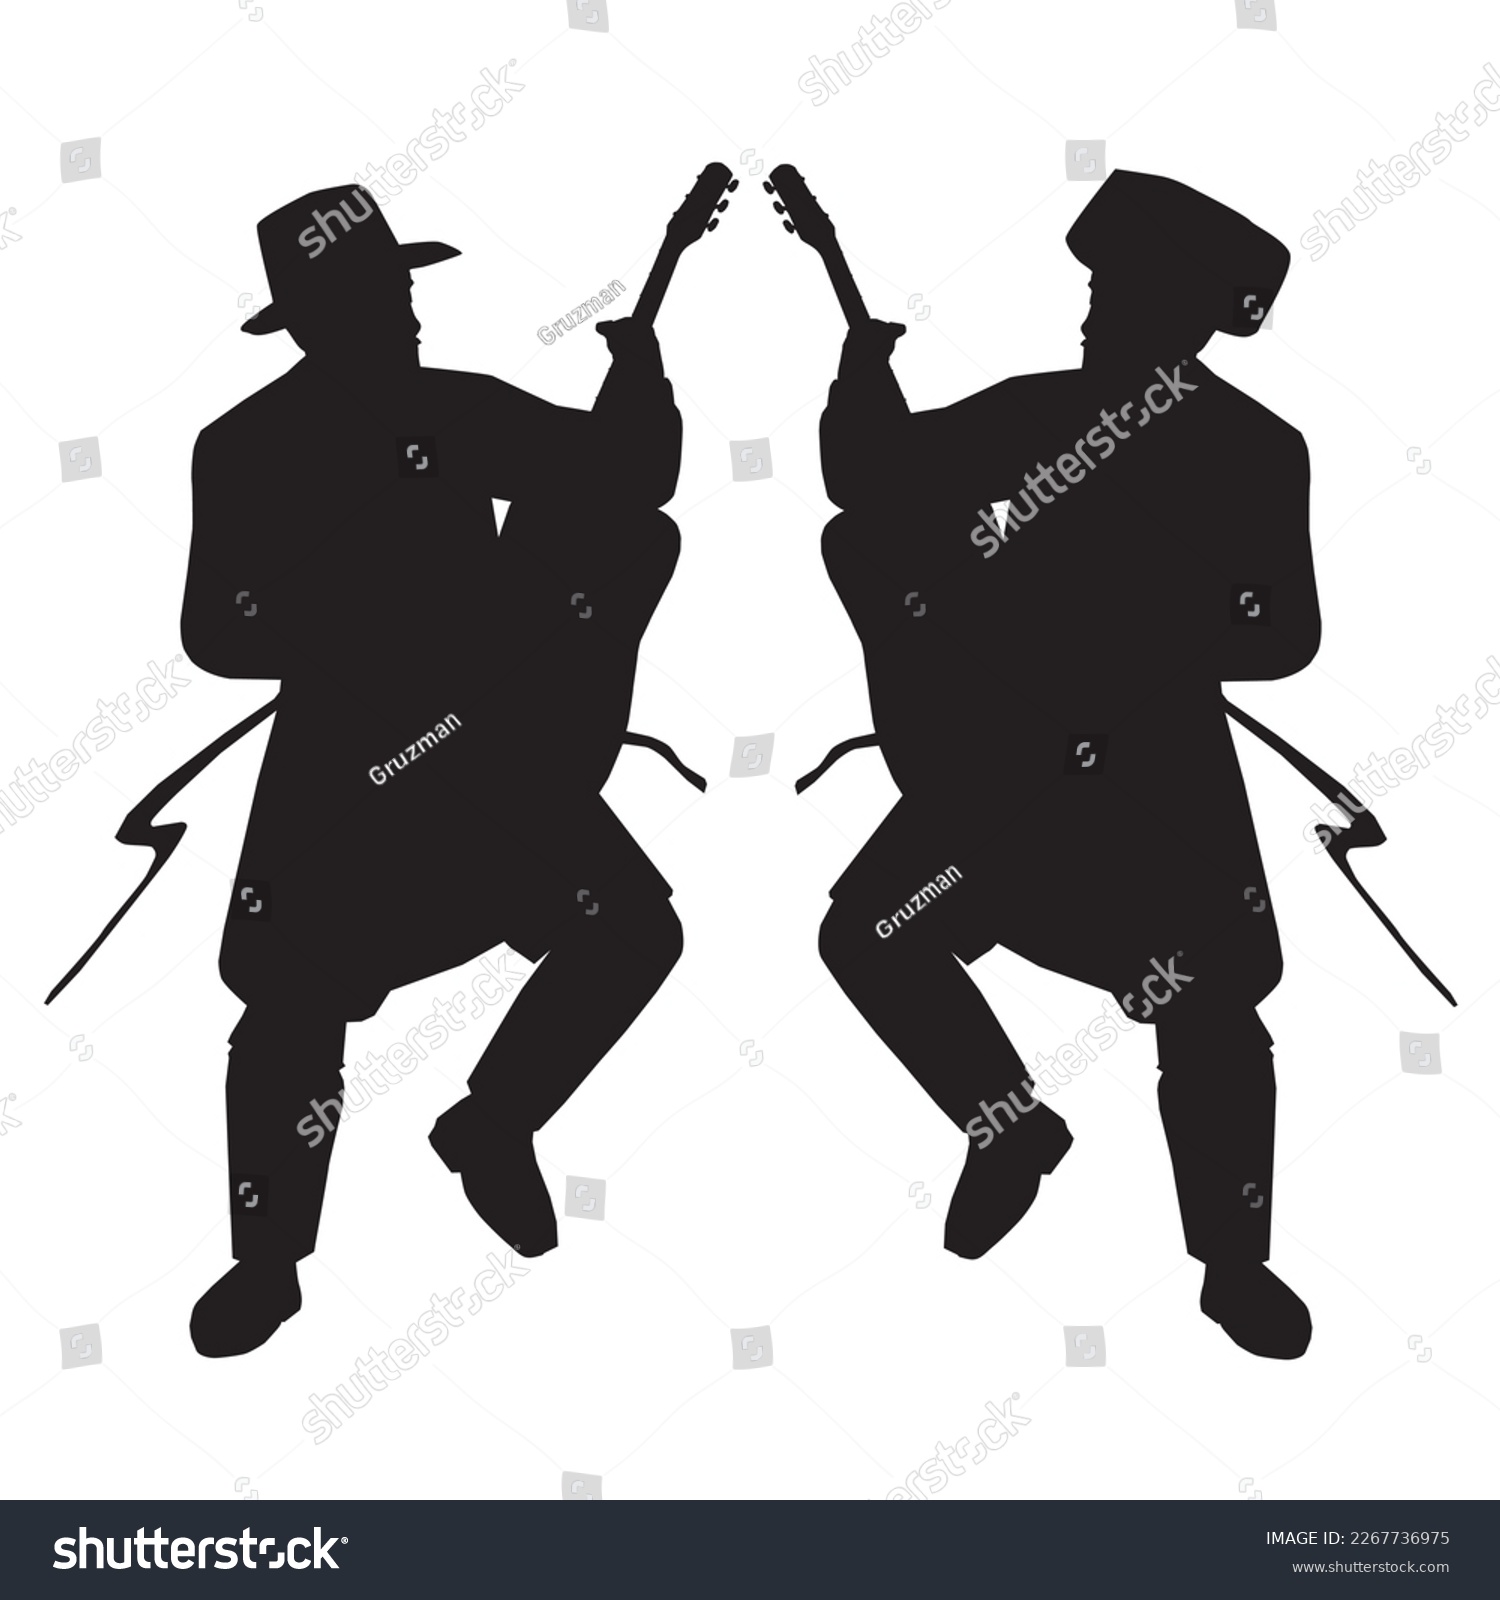 שני חסידים רוקדים עם גיטרה ביד חסיד רוקד גיטרות מנגן מנגנים צללית שחורה וקטורית על רקע לבן-22...jpg